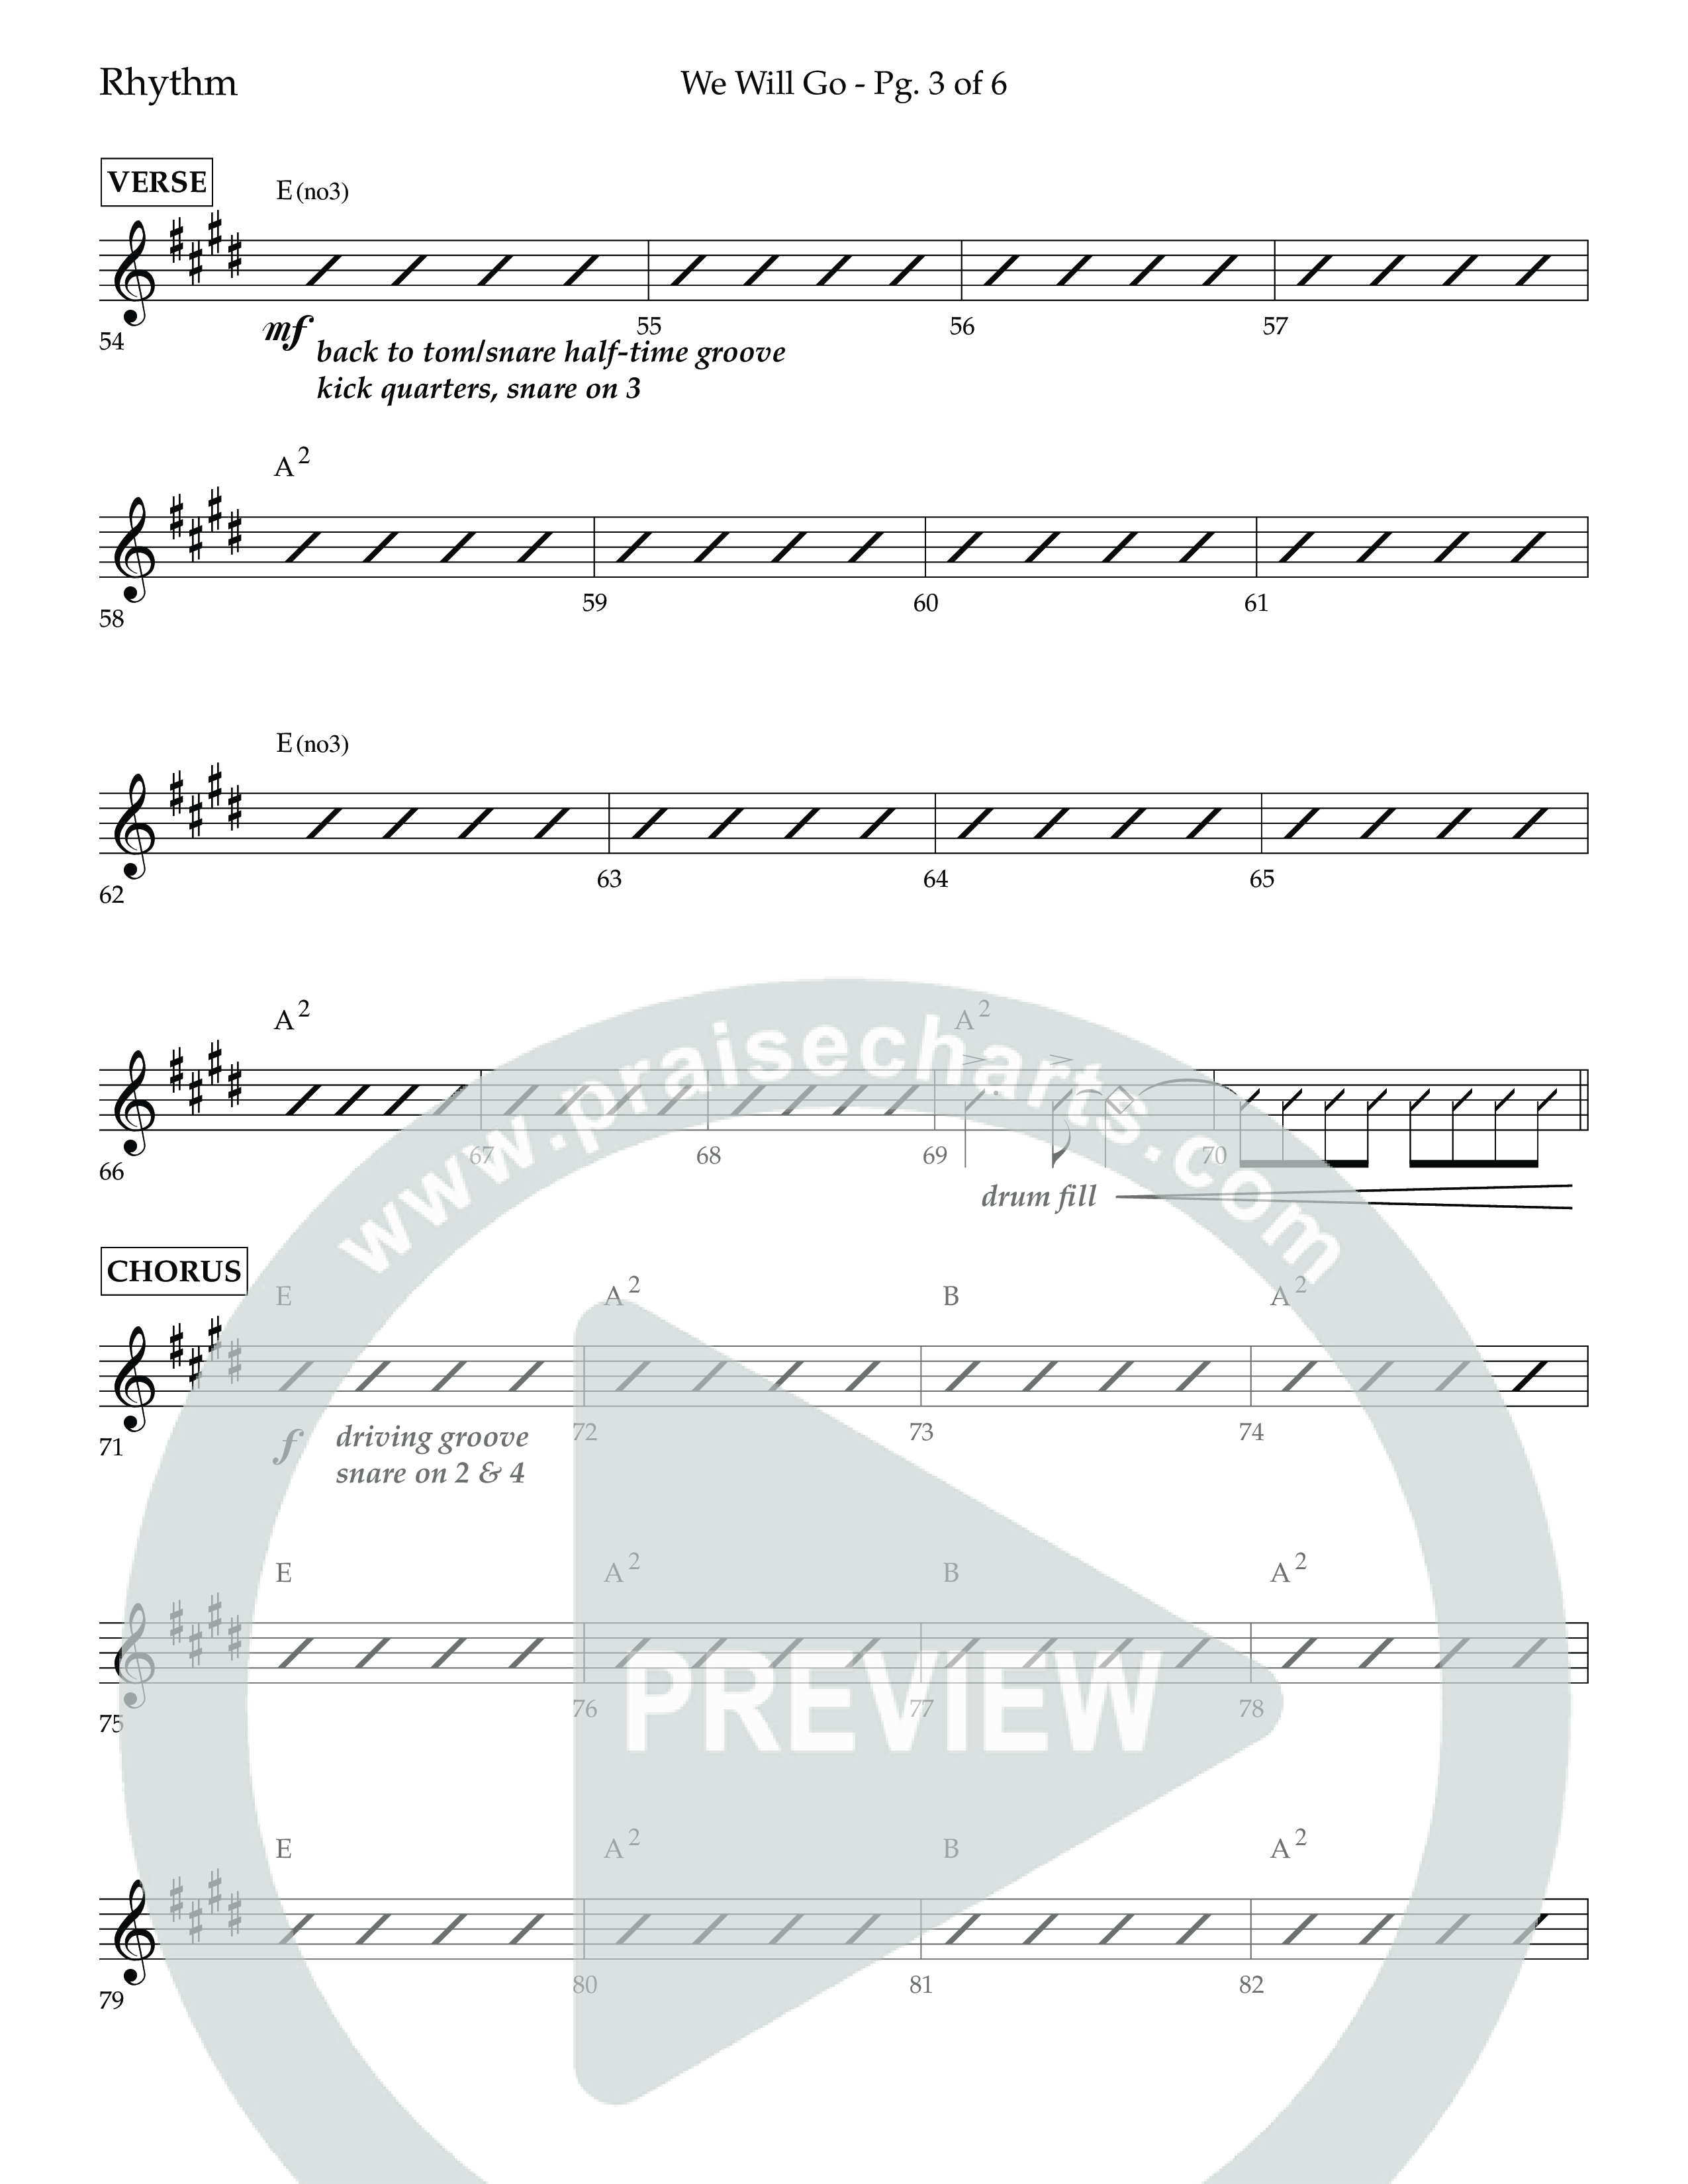 We Will Go (Choral Anthem SATB) Lead Melody & Rhythm (Lifeway Choral / Arr. Cliff Duren)